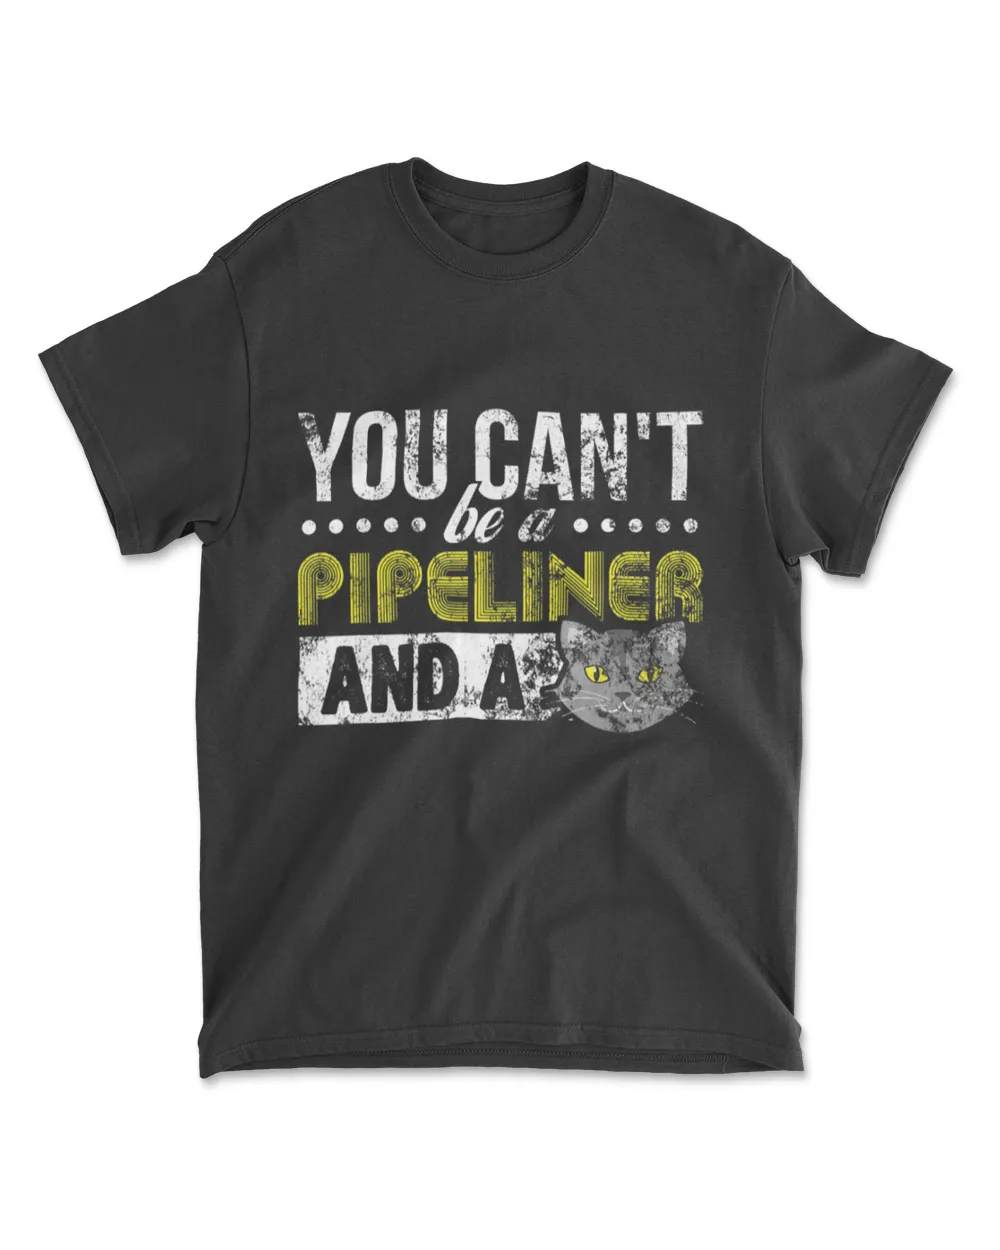 Gag Gift Cat T Shirt Pipeliner Welder Welding Pipeline Gift T-Shirt